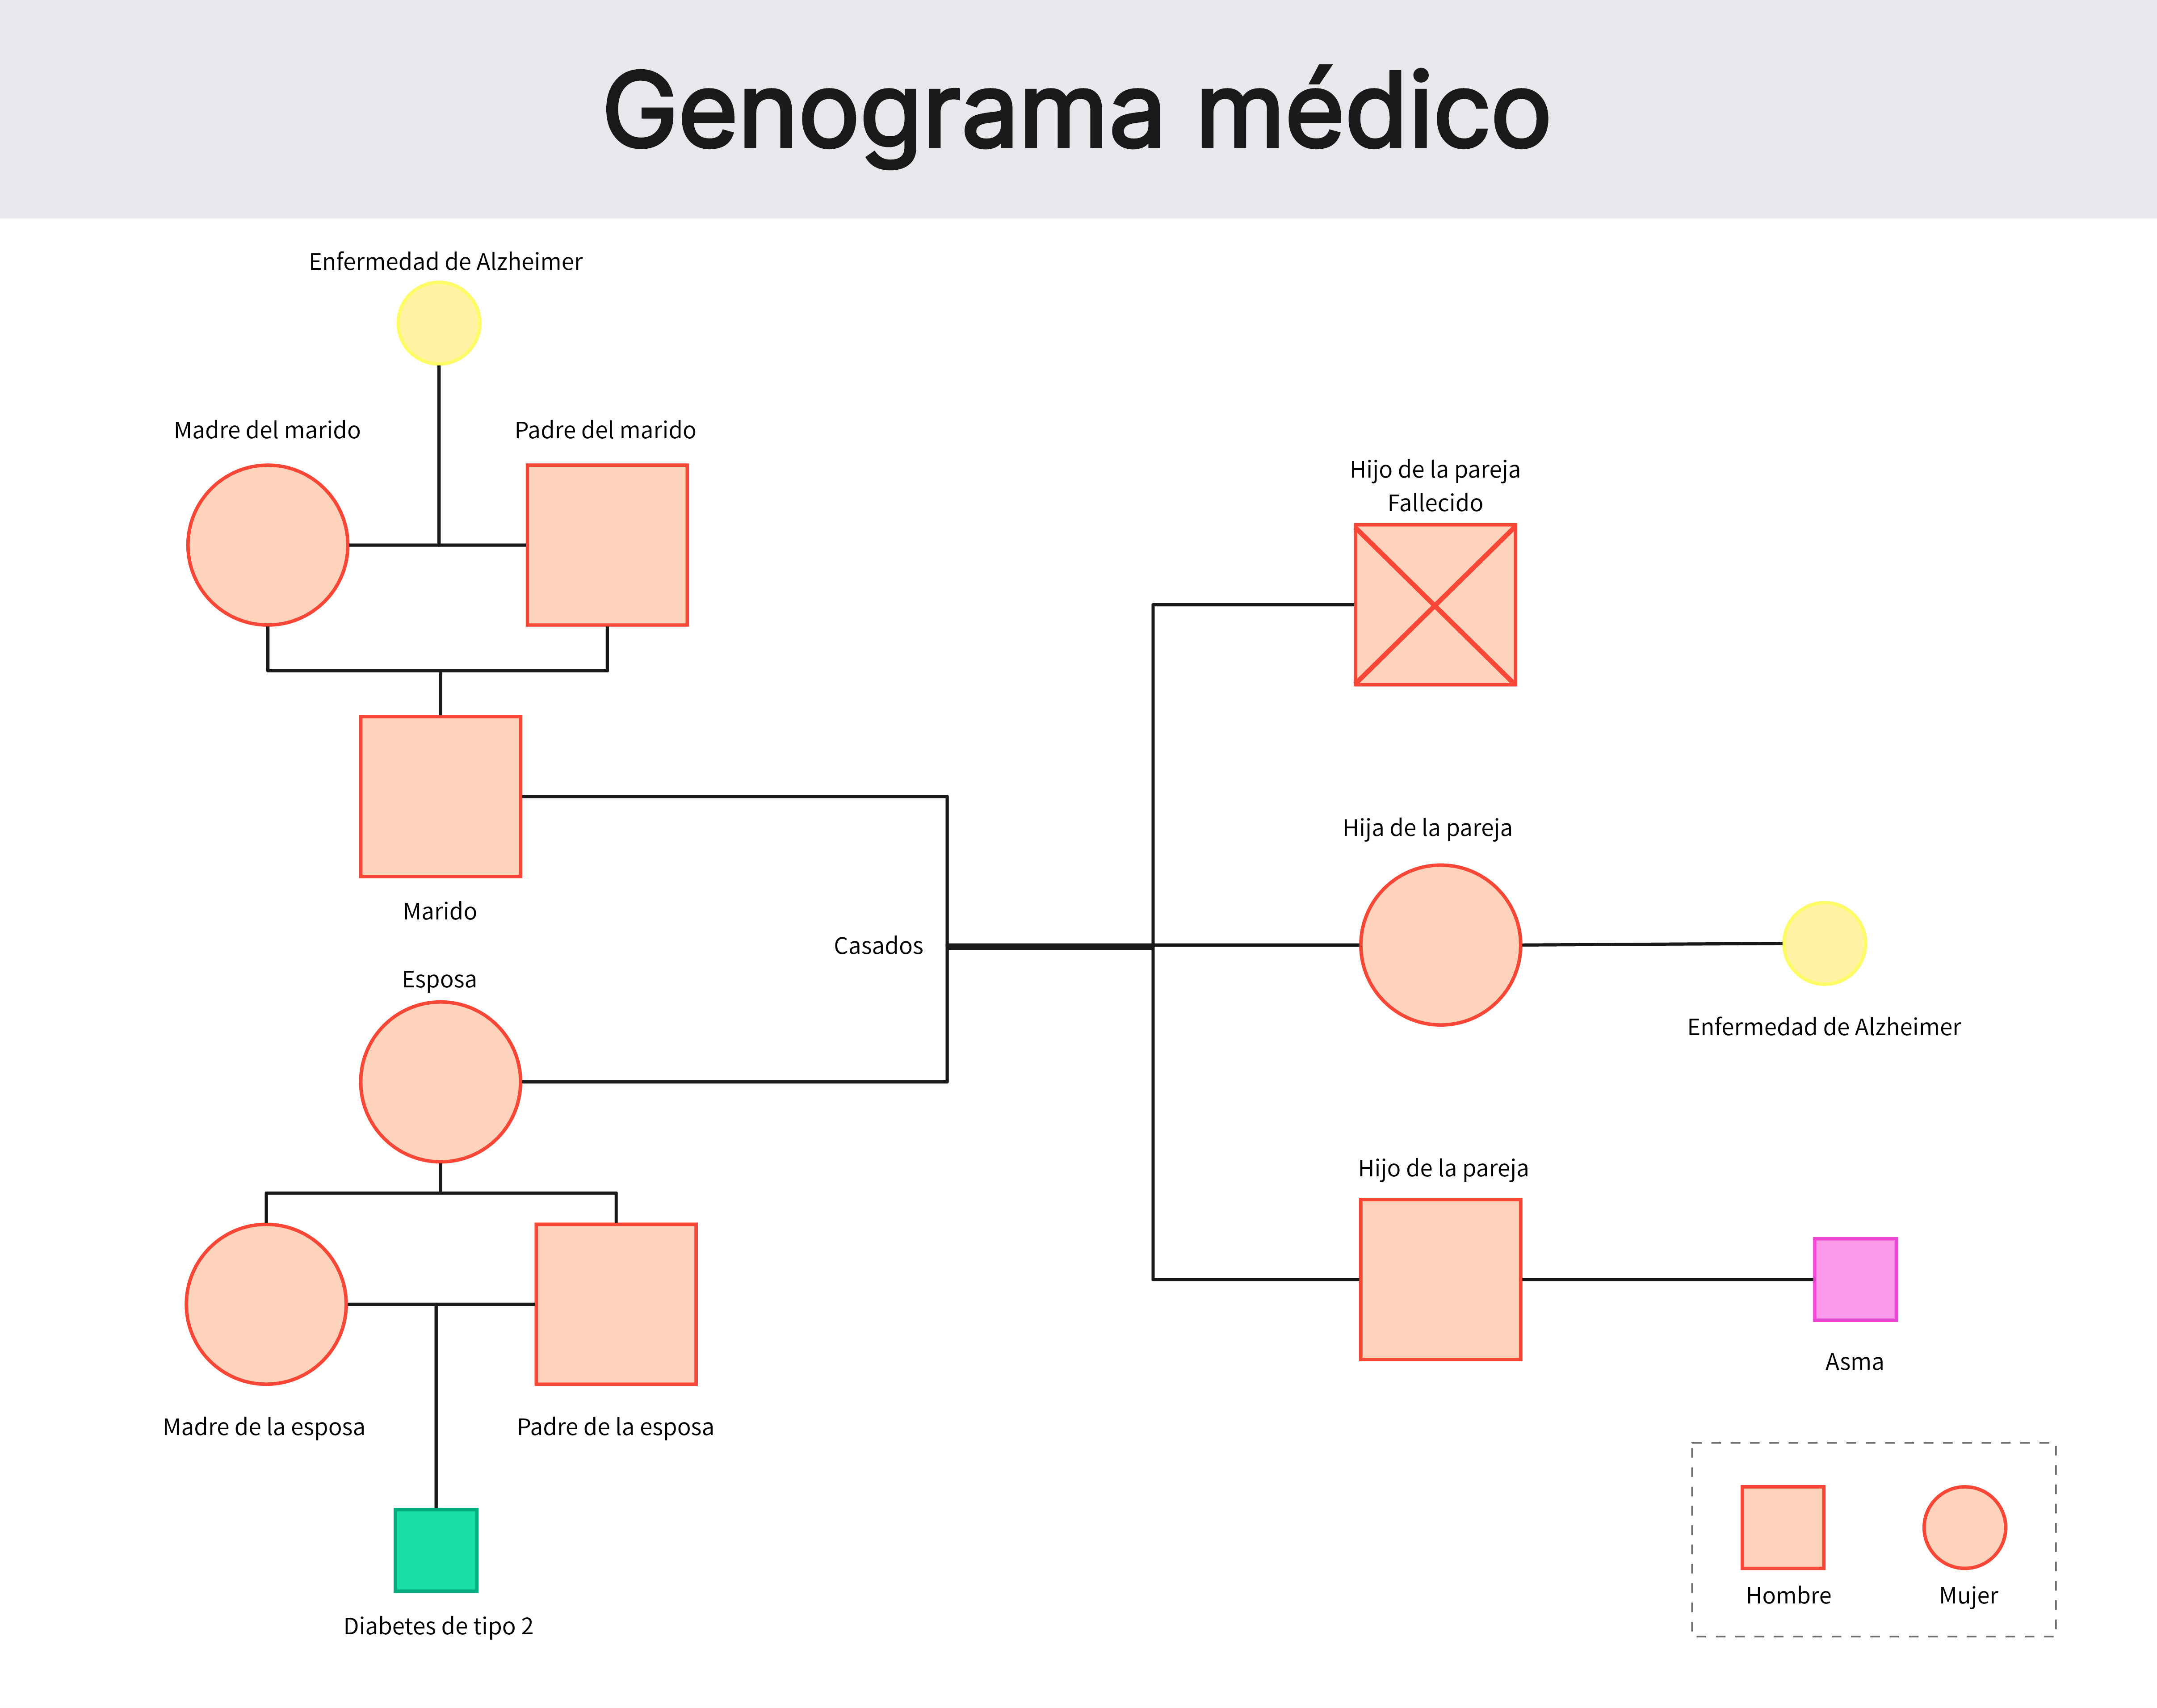 Ejemplo de genograma médico